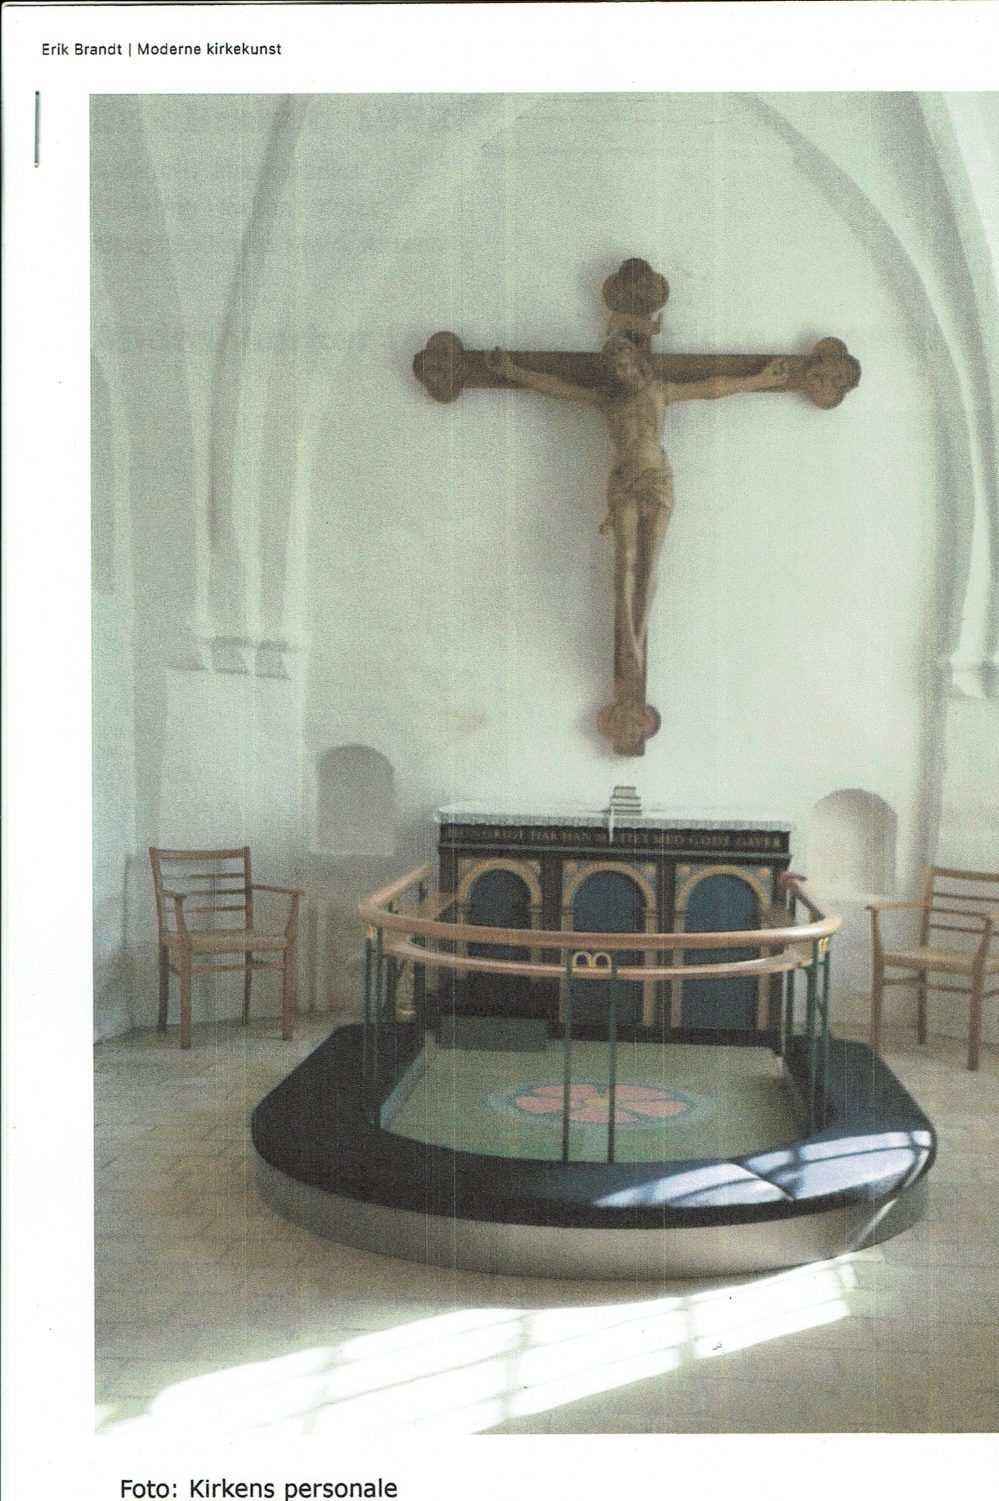 Søllested Kirke, 1992